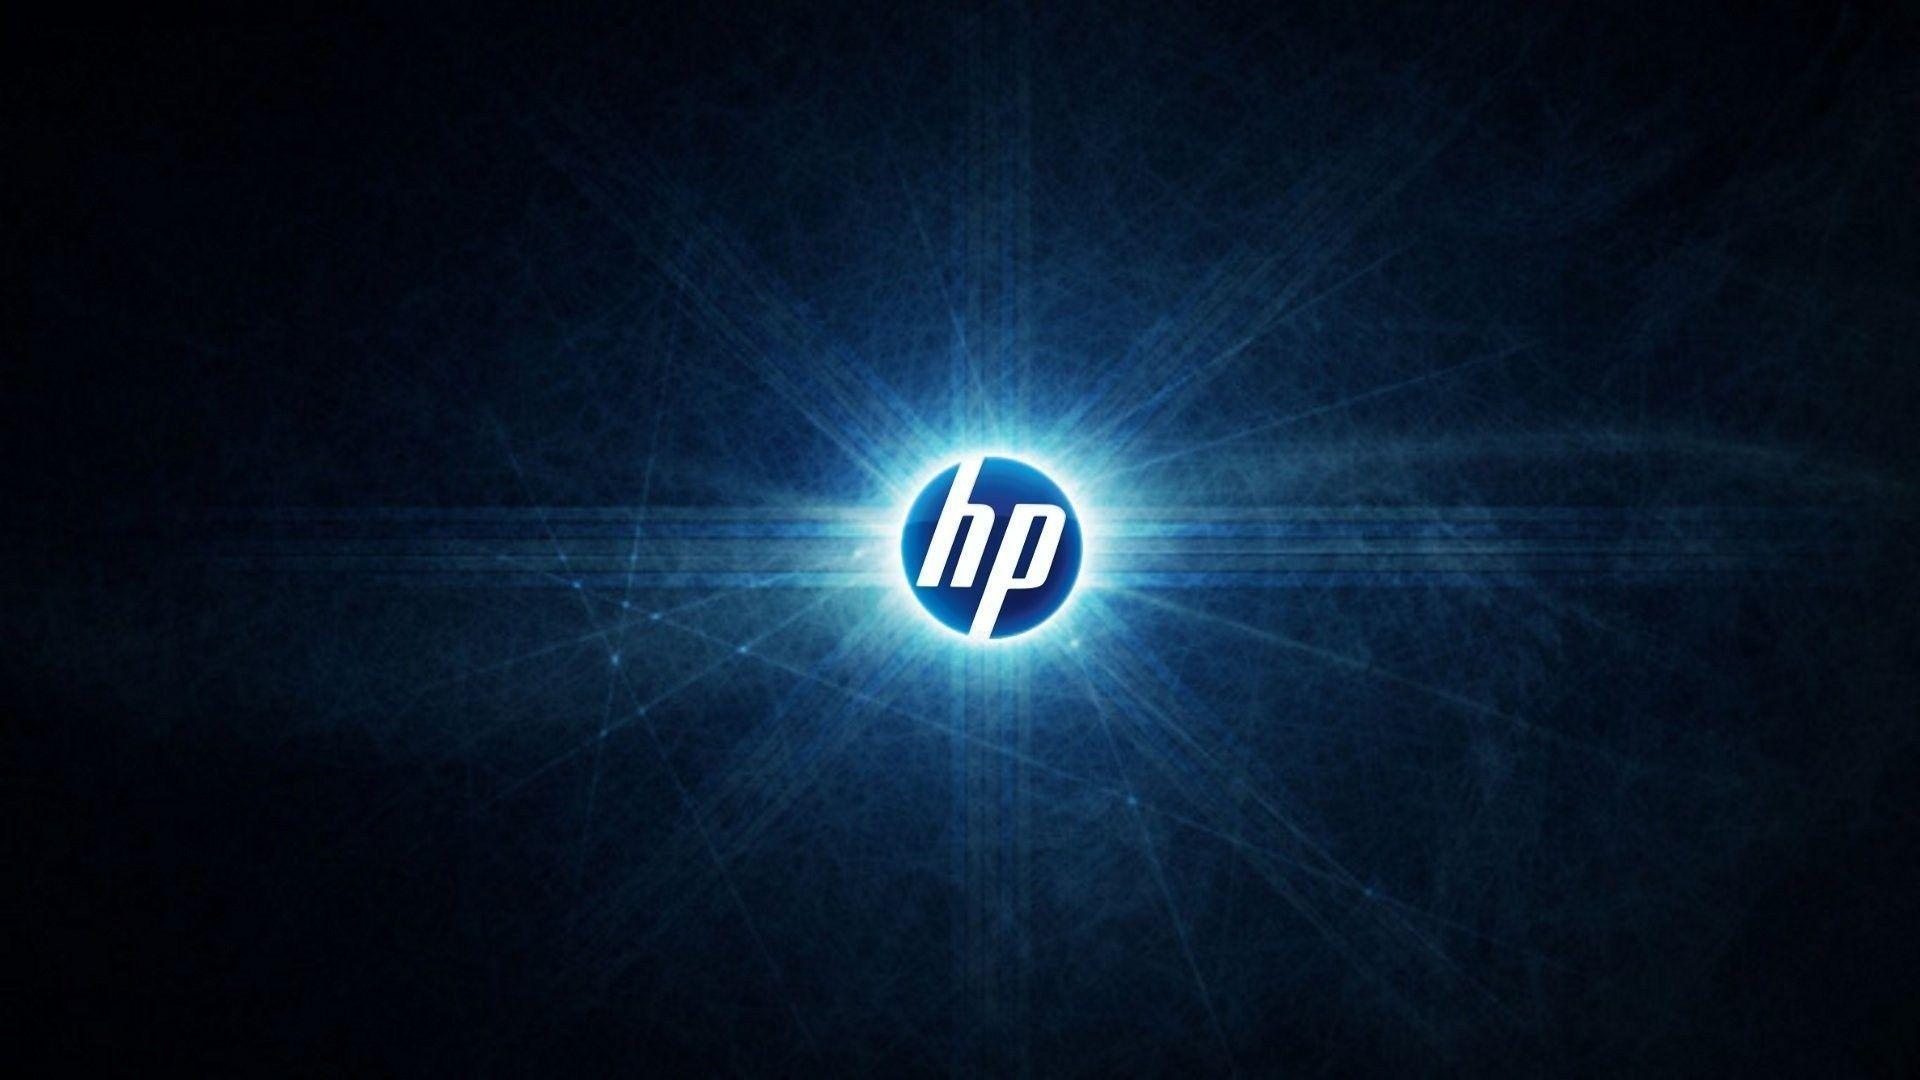 HP HD desktop wallpaper Widescreen High Definition. HD Wallpaper